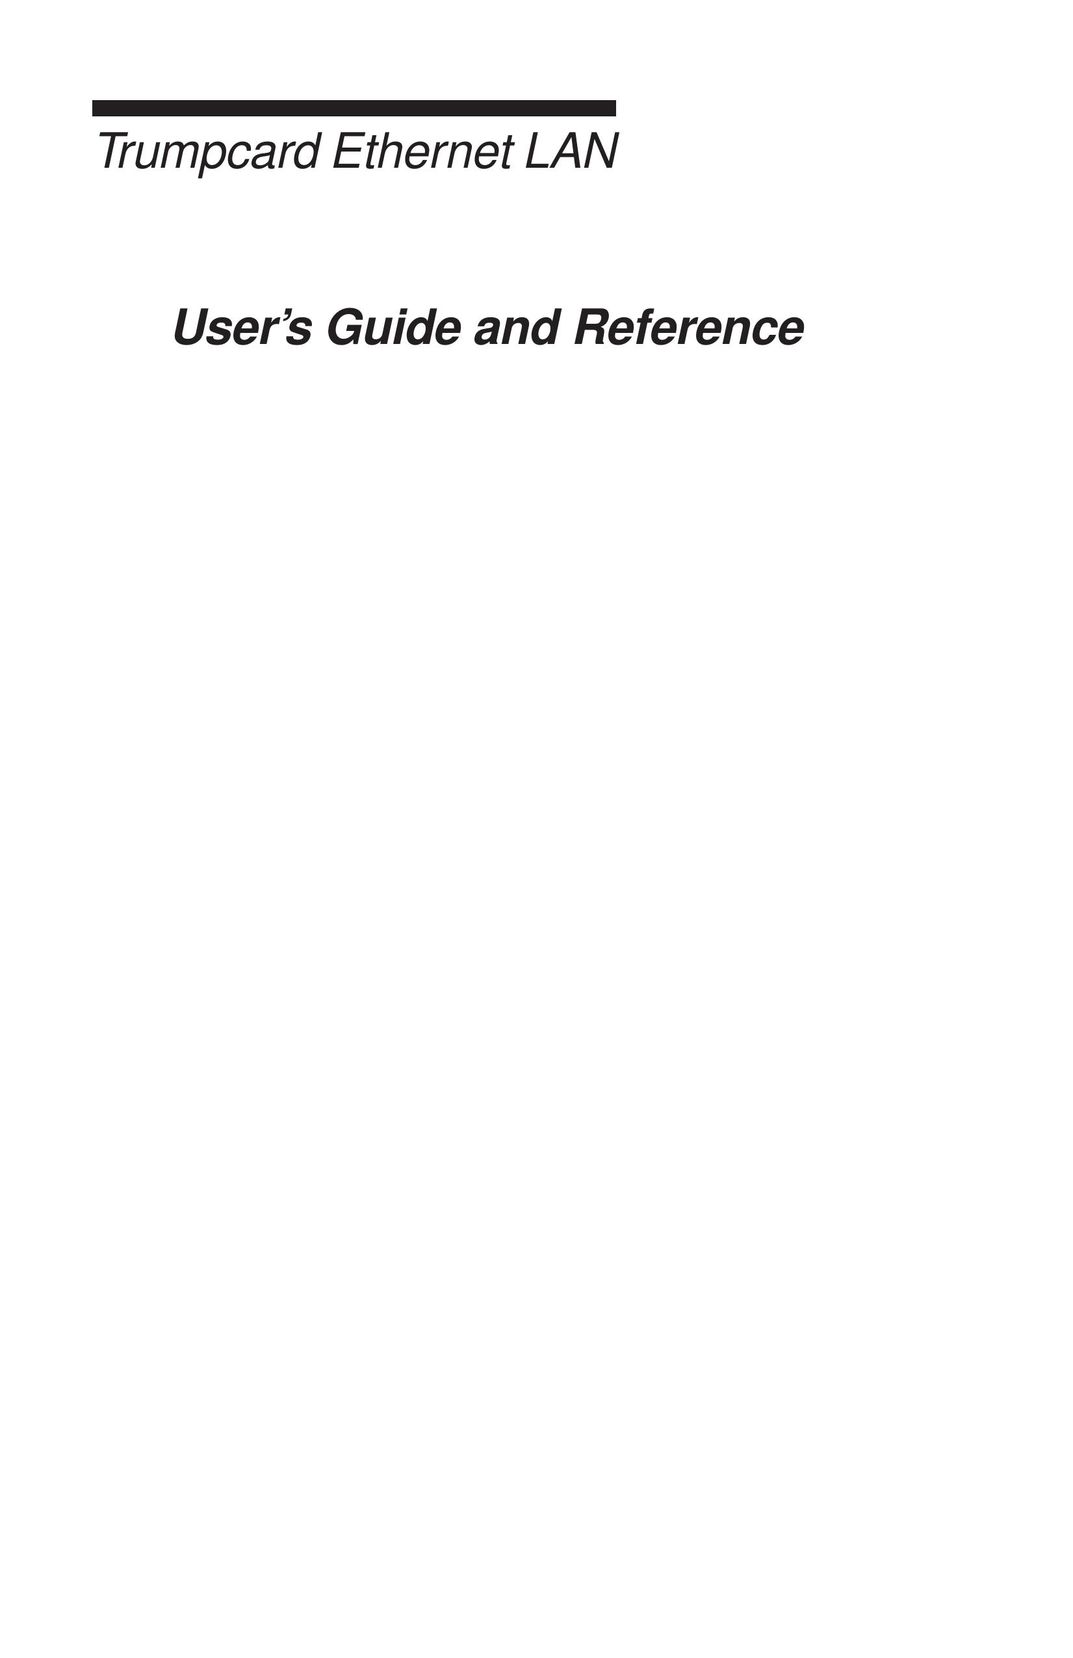 Ositech comm 614006-001 Network Card User Manual